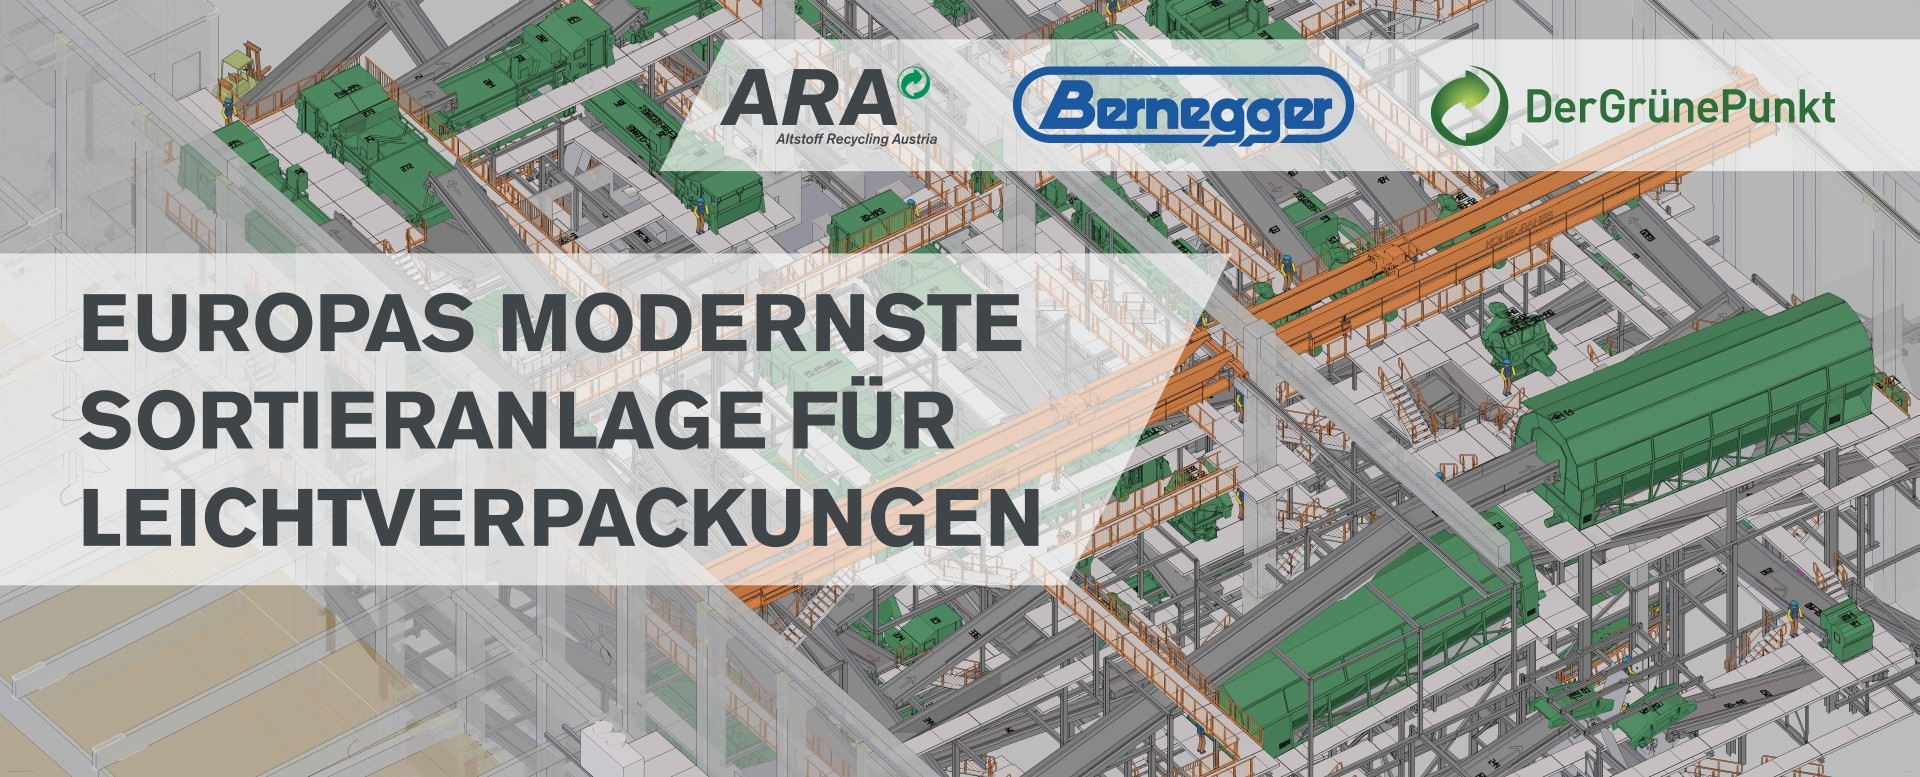 Mit der Kapazität von 100.000 t pro Jahr kann die neue Sortieranlage 50 % der Leichtverpackungen von Österreich sortieren.